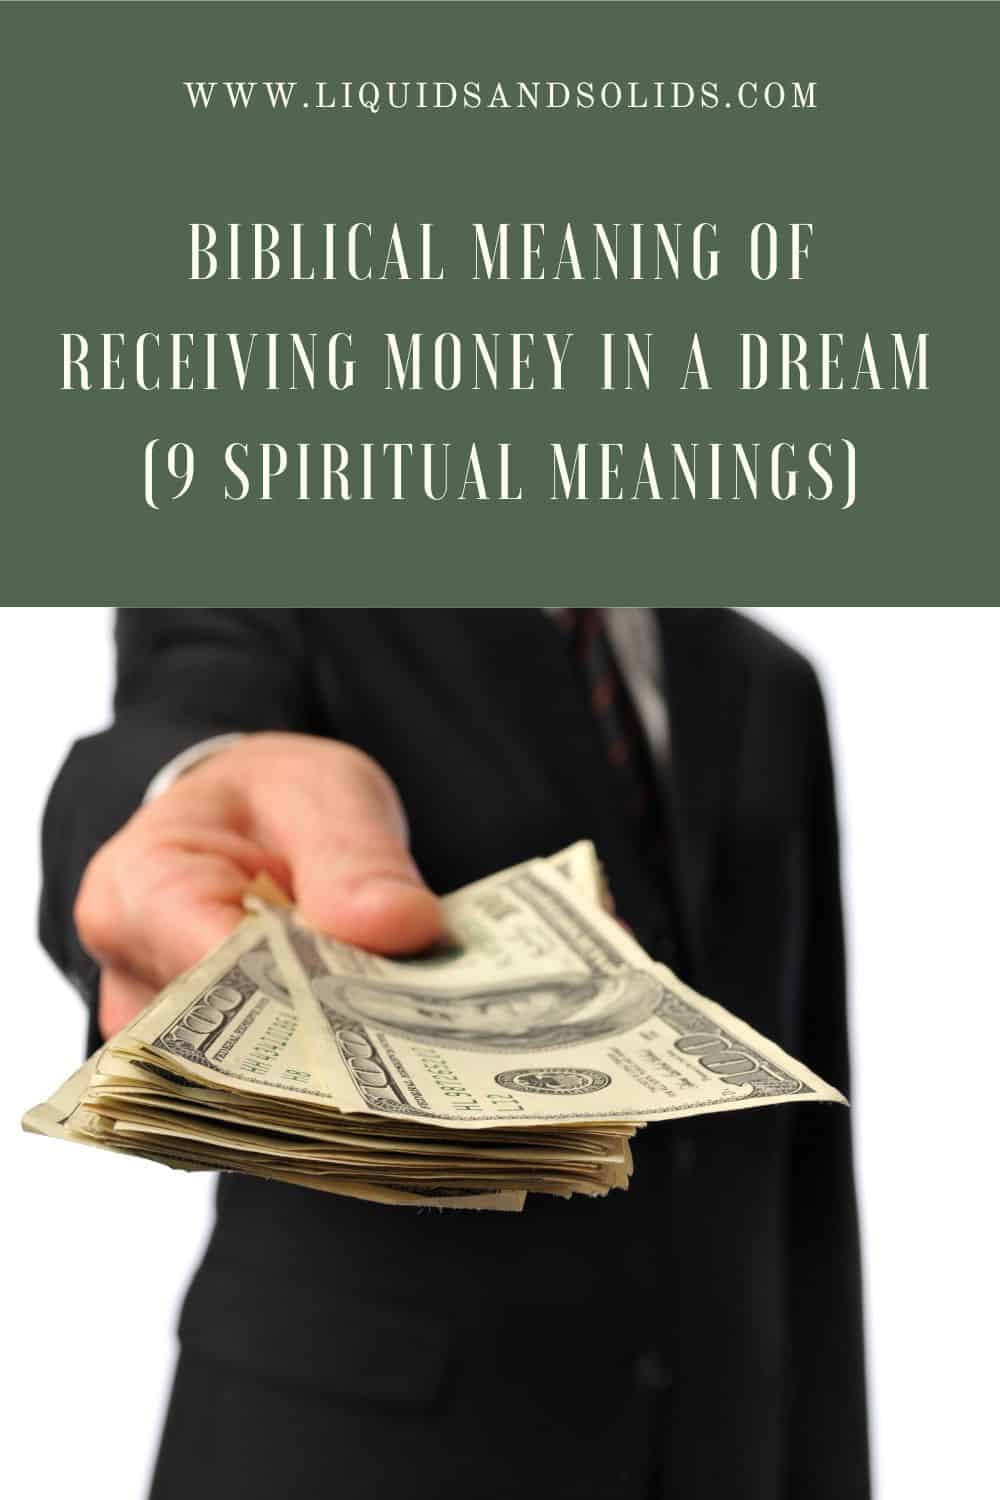  Raha saamise piibellik tähendus unes (9 vaimset tähendust)